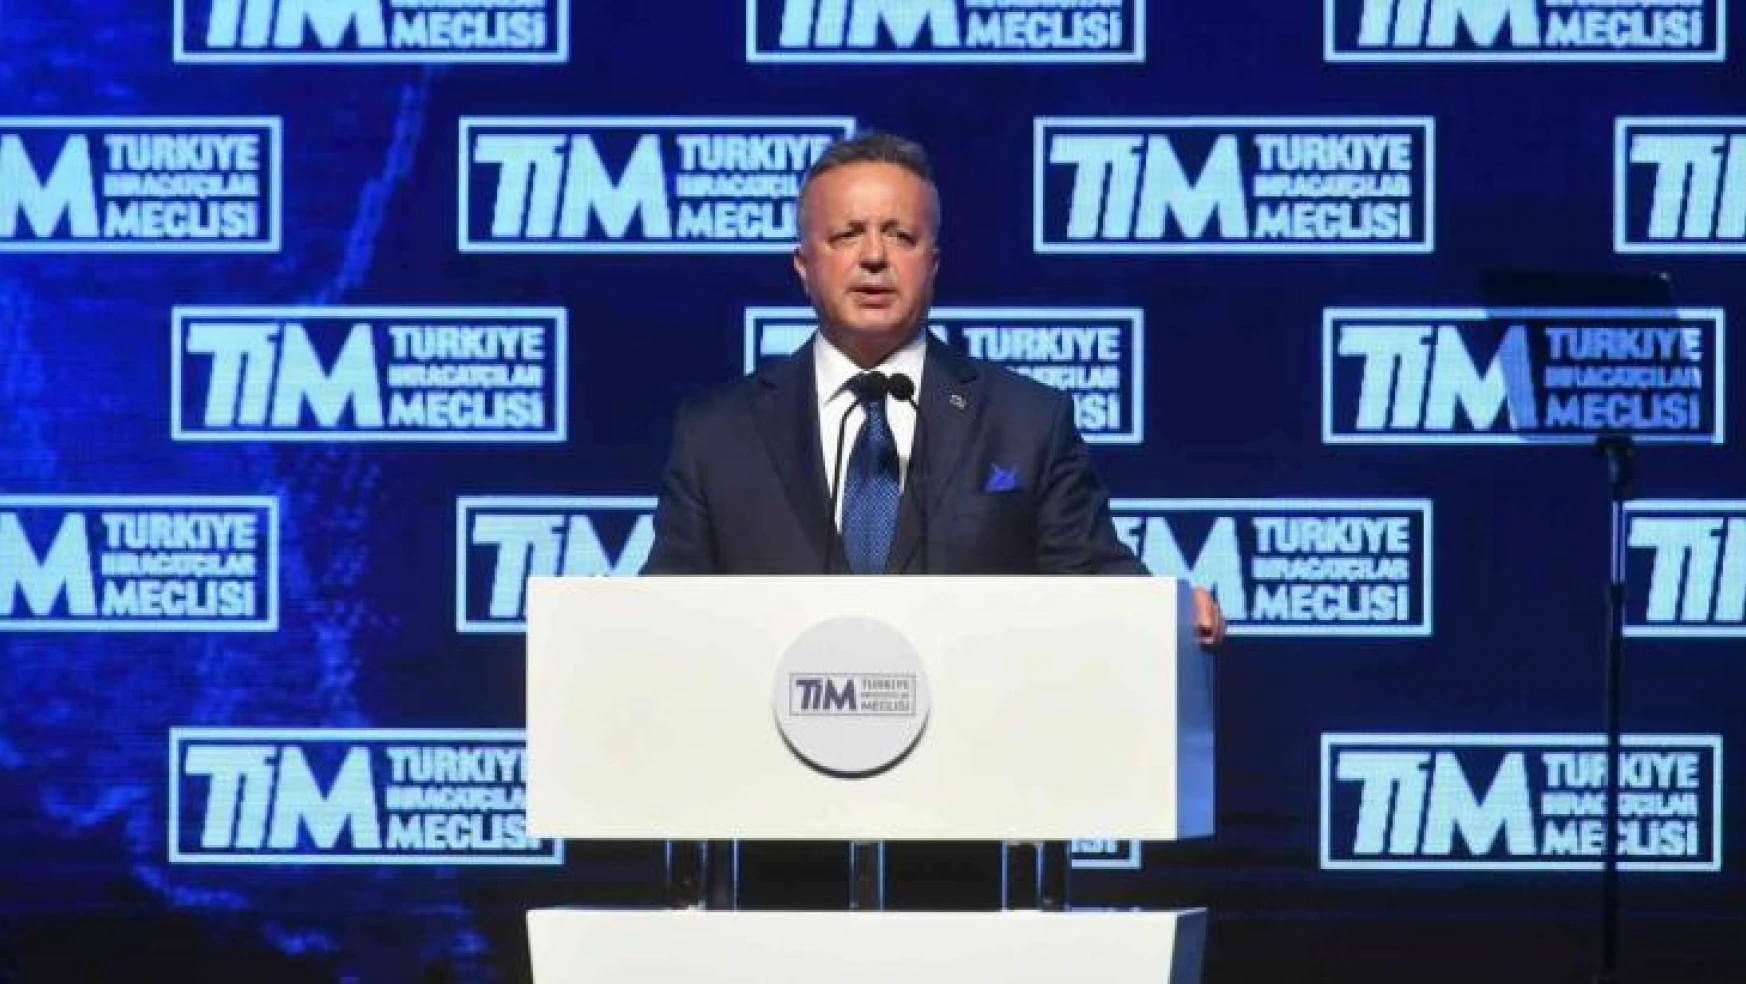 TİM Başkanı İsmail Gülle: '' Türkiye ekonomisinin ve ihracatının hizmetkarı olmaya devam edeceğim''